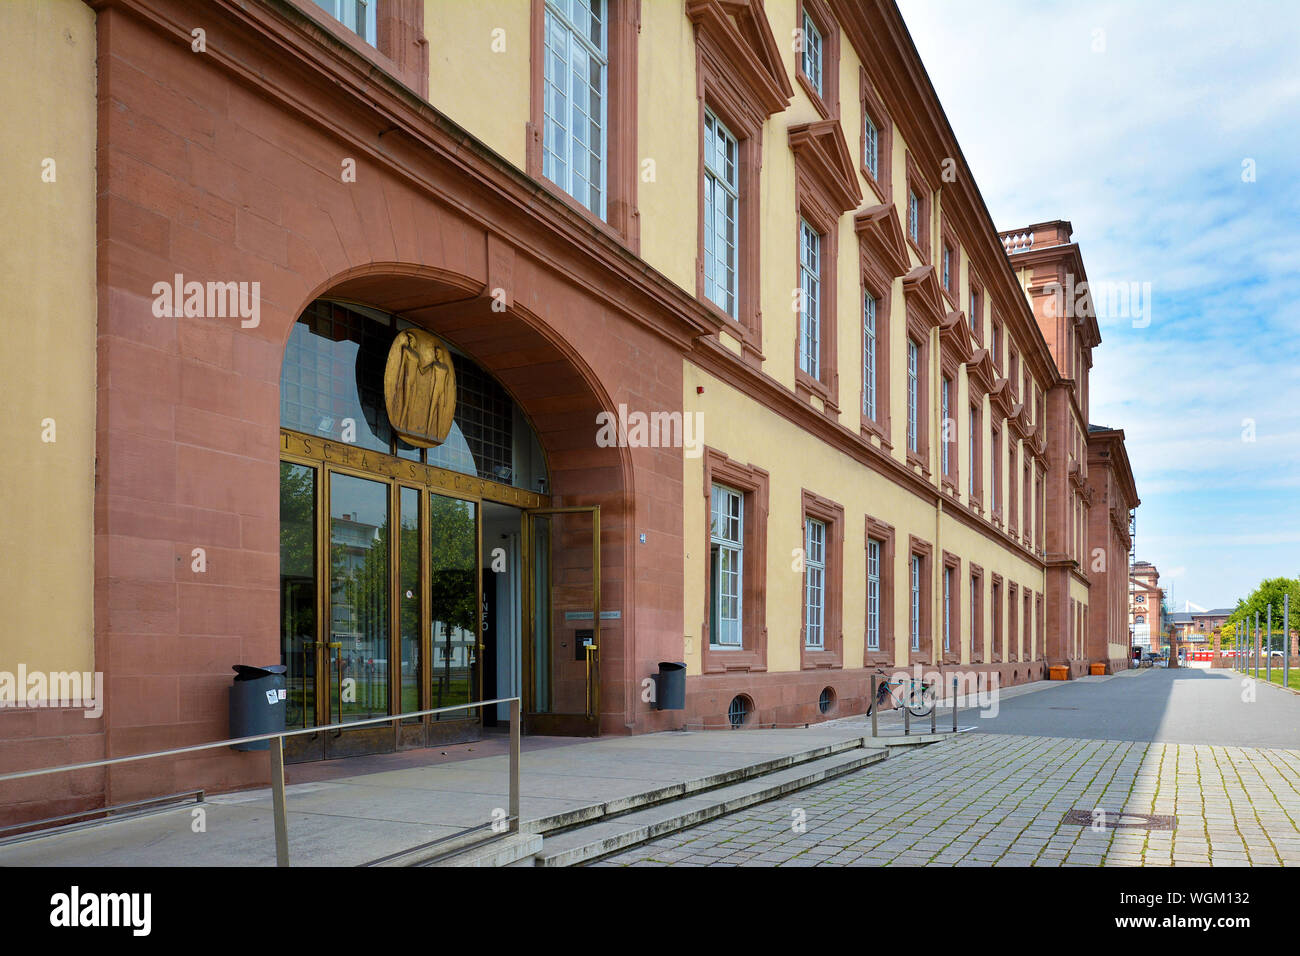 Mannheim, Allemagne - Juillet 2019 : façade avec entrée principale de l'ancien édifice baroque historique de la recherche publique Université de Mannheim Banque D'Images